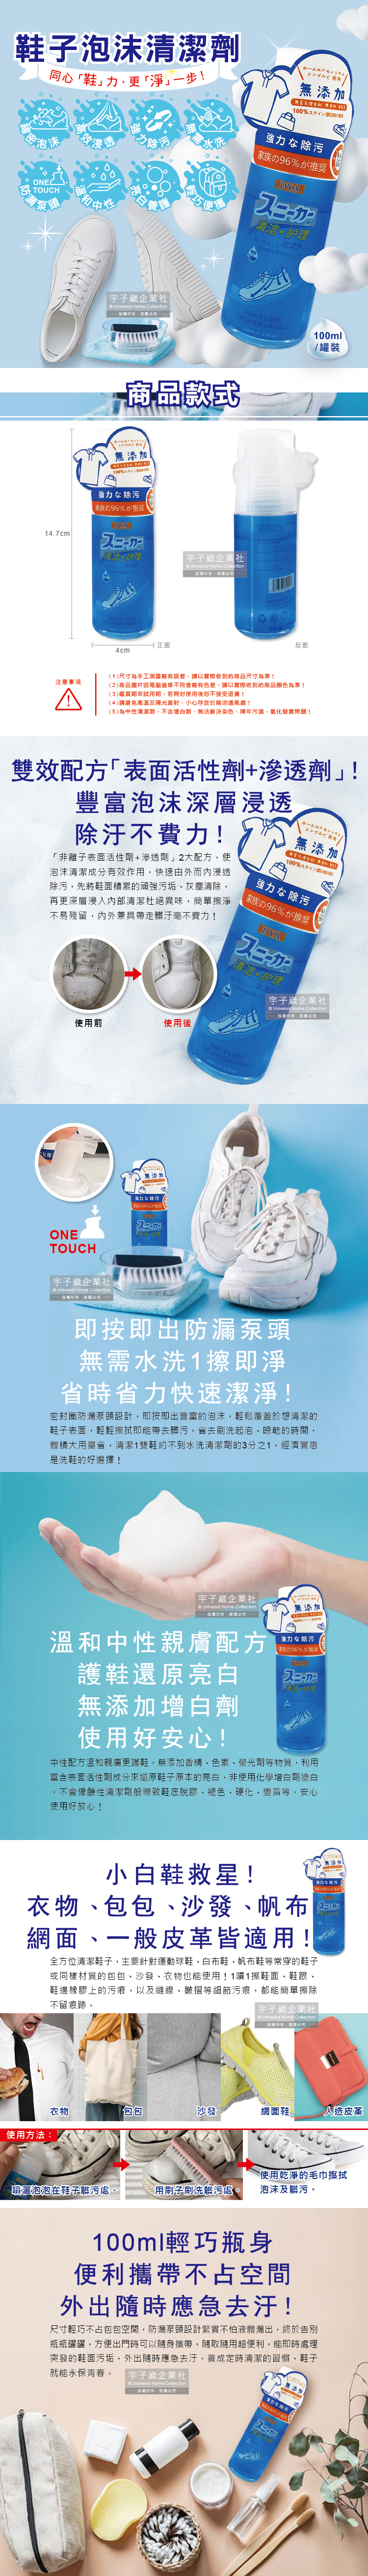 (清潔-鞋子)日本DYA-鞋子泡沫清潔劑介紹圖